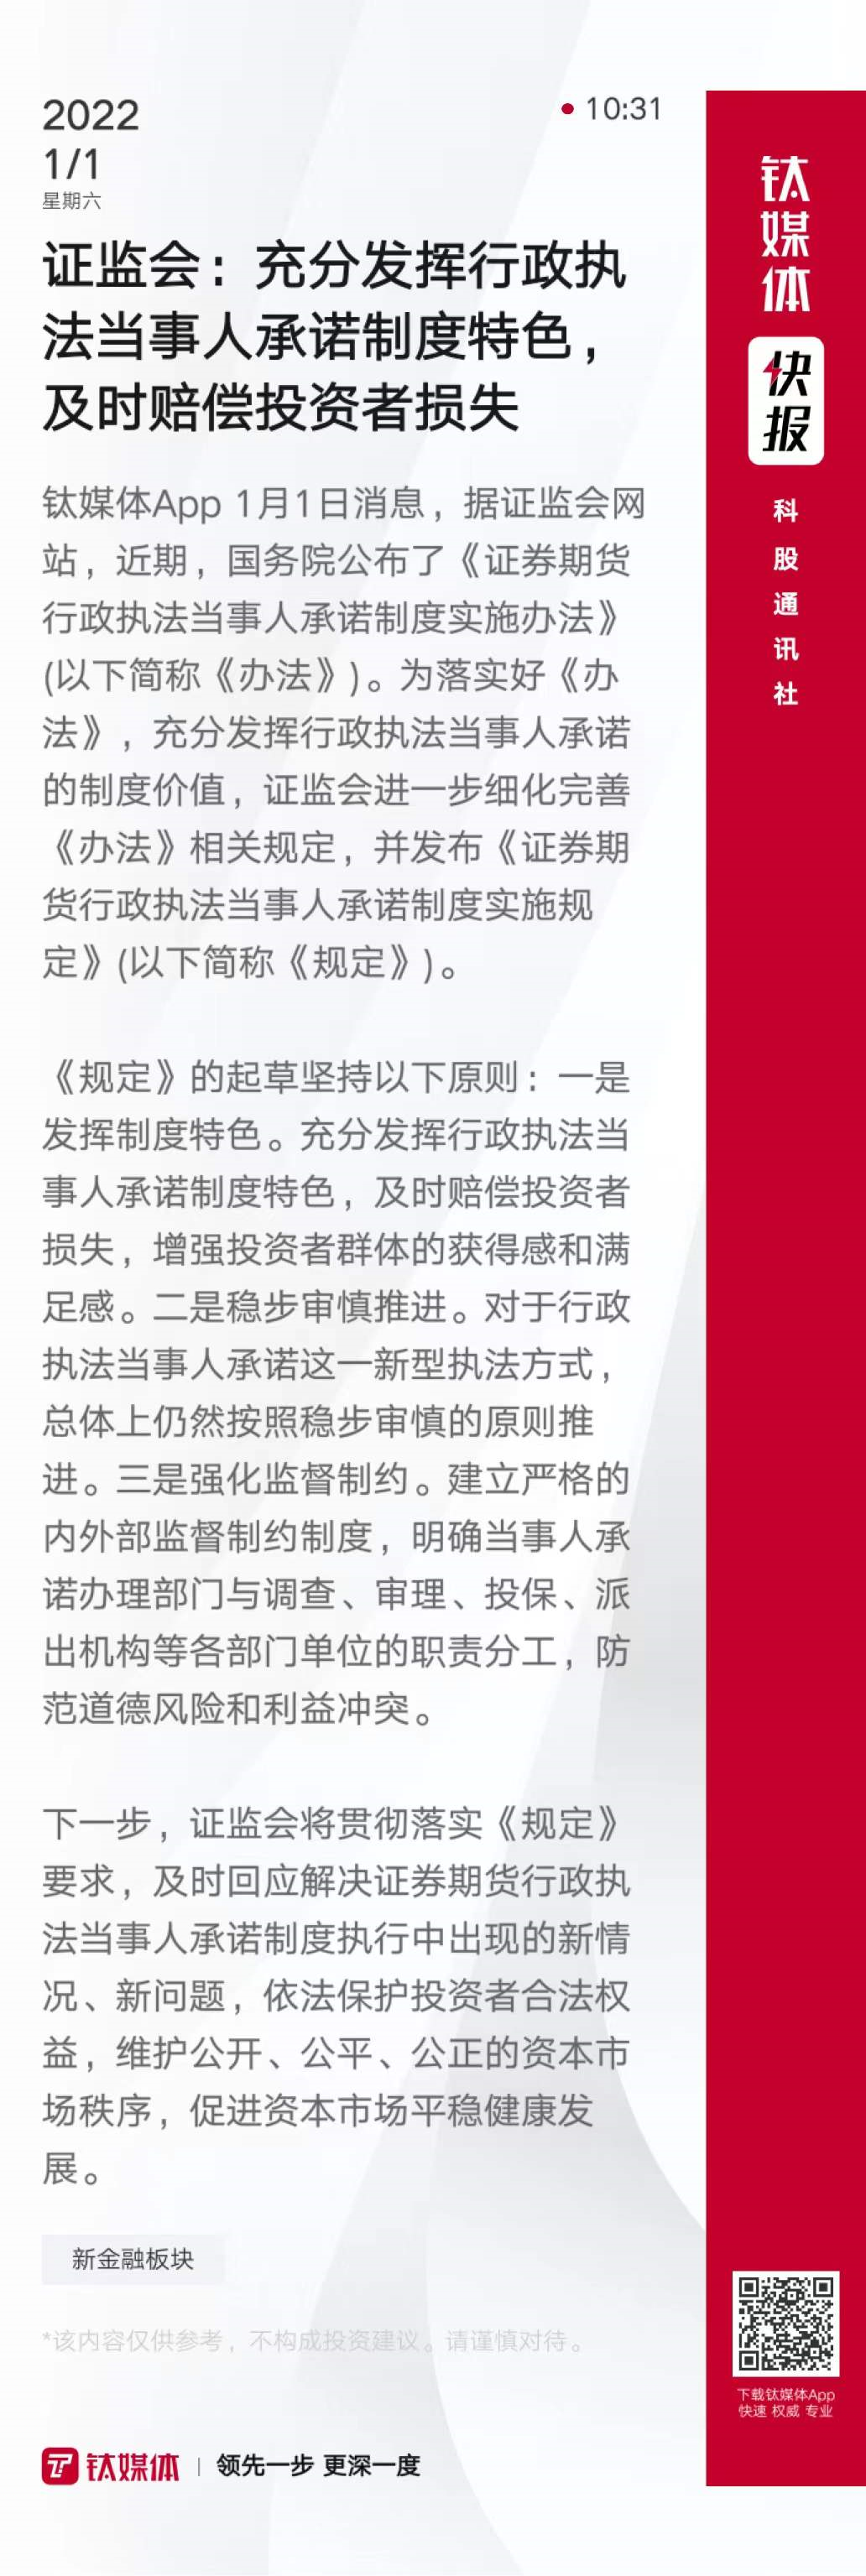 张庭林瑞阳微博均被禁言；恒大海花岛39栋楼被责令拆除丨科股快报